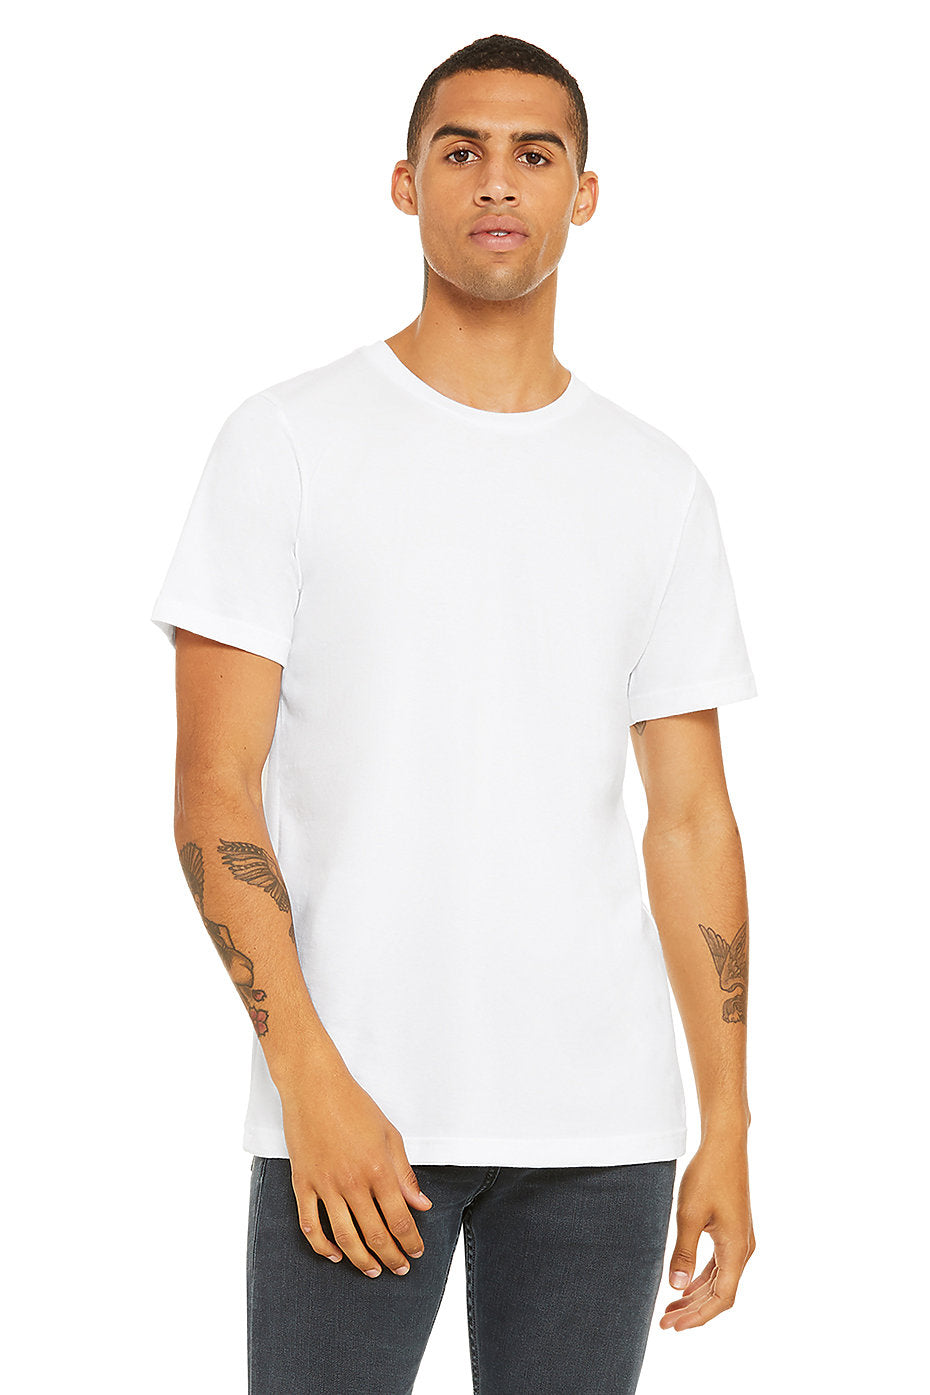 YNOT OG Logo Unisex T-Shirt (Black Print)